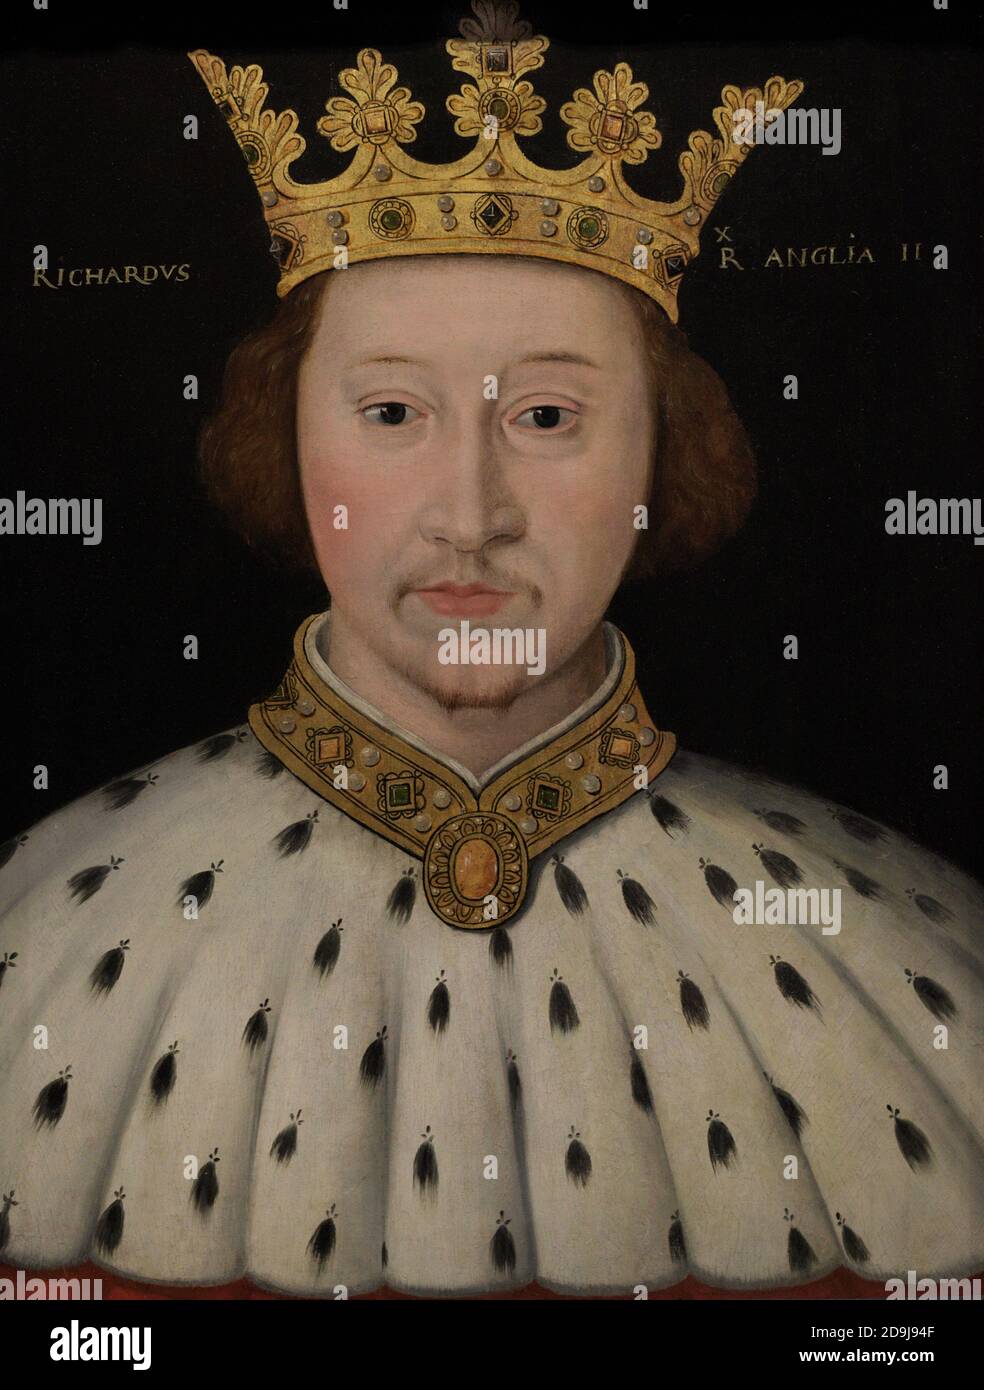 König Richard II. Von England (1367-1400). Plantagenet House. Porträt eines nicht identifizierten Künstlers. Öl auf Platte, 1597-1618. National Portrait Gallery. London, England, Vereinigtes Königreich. Stockfoto